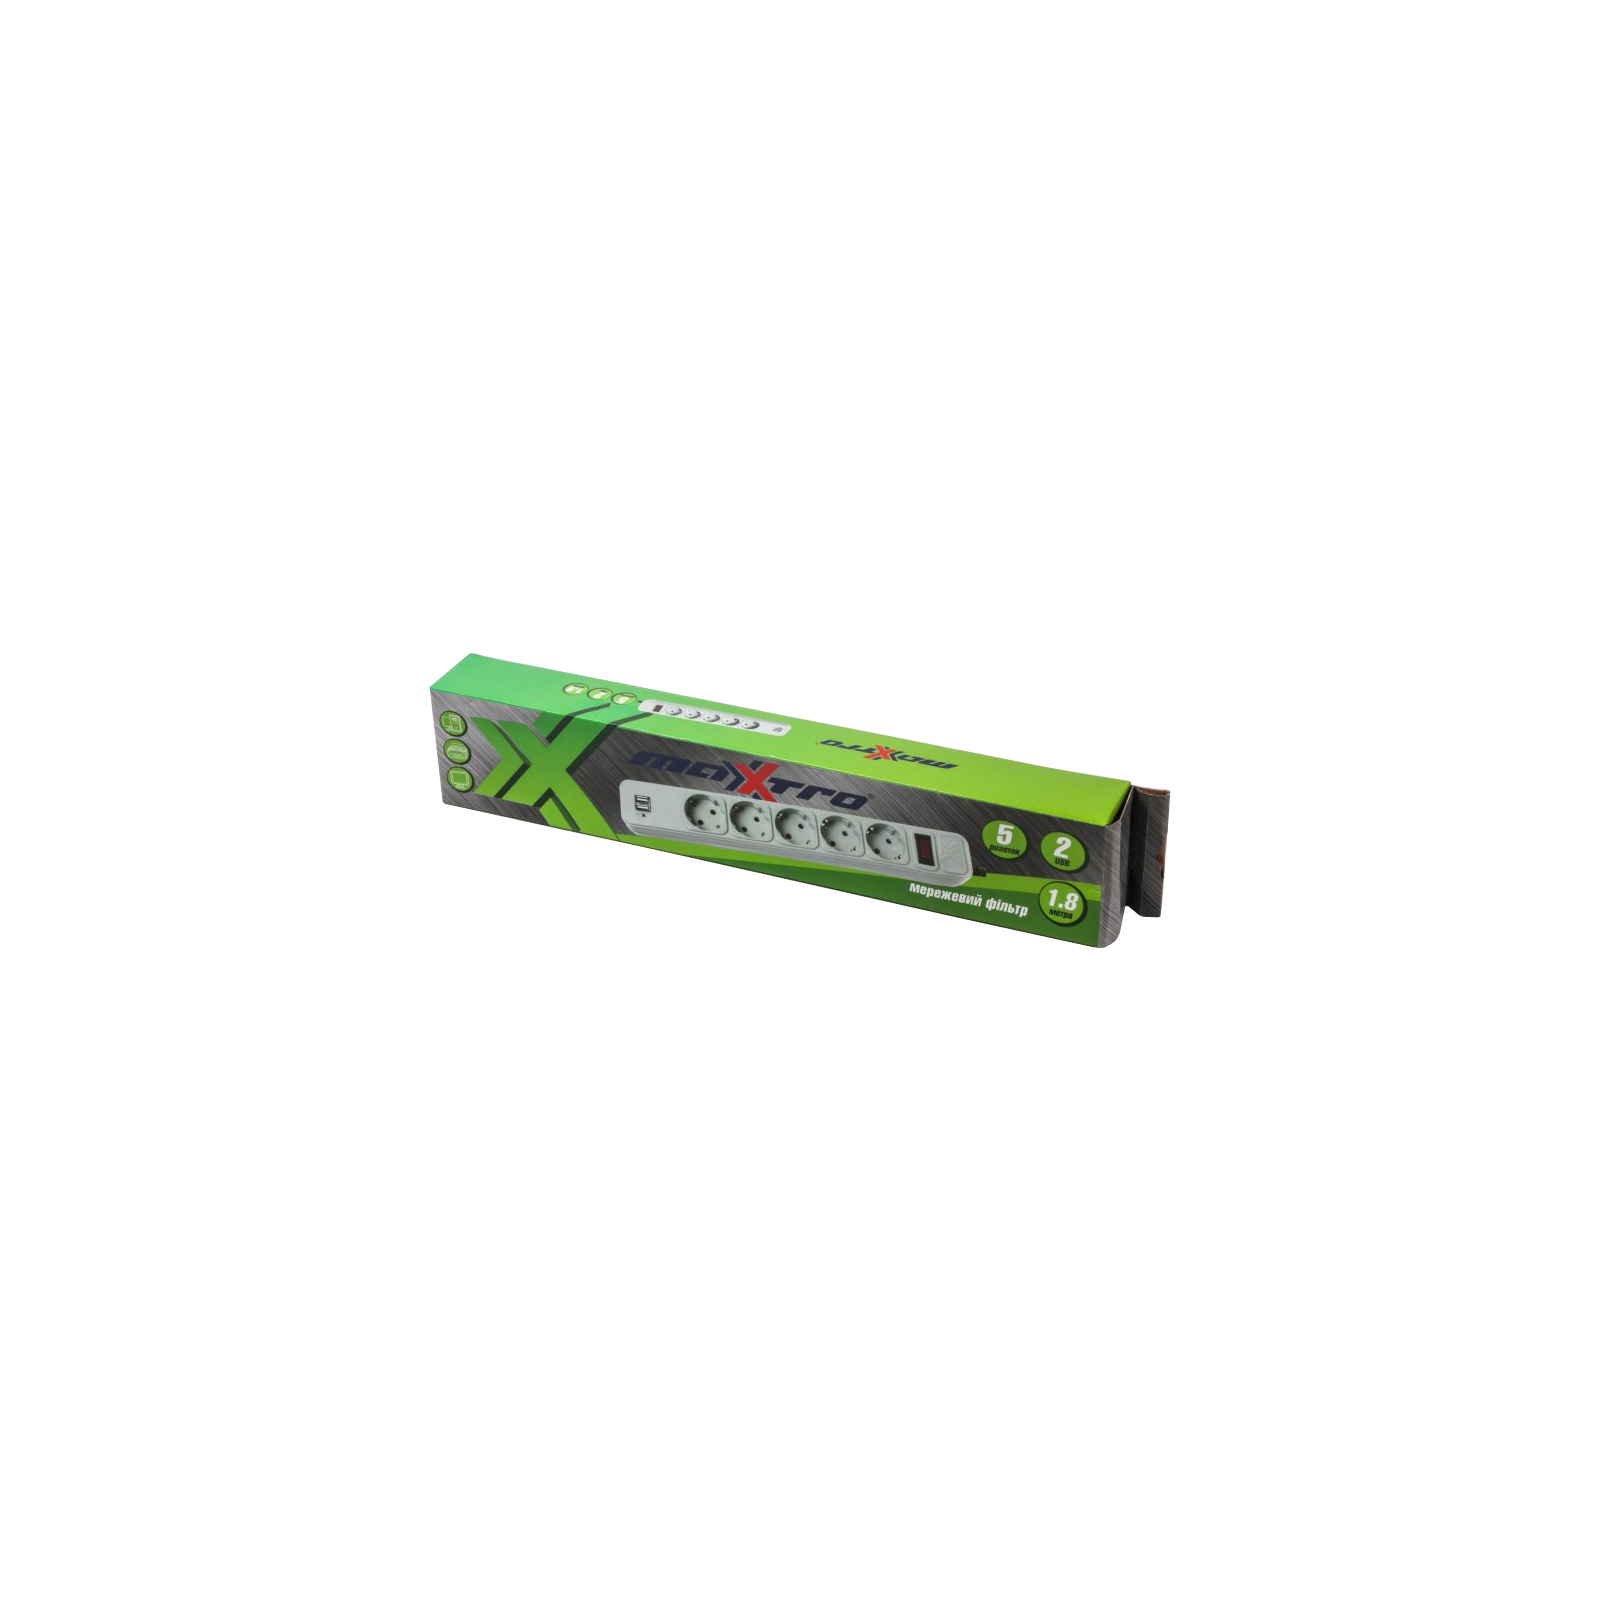 Сетевой фильтр питания Maxxtro PWE-05K-1.8, серый, 1.8 м кабель, 5 розеток, USB зарядка 2А (PWE-05K-1.8) изображение 2